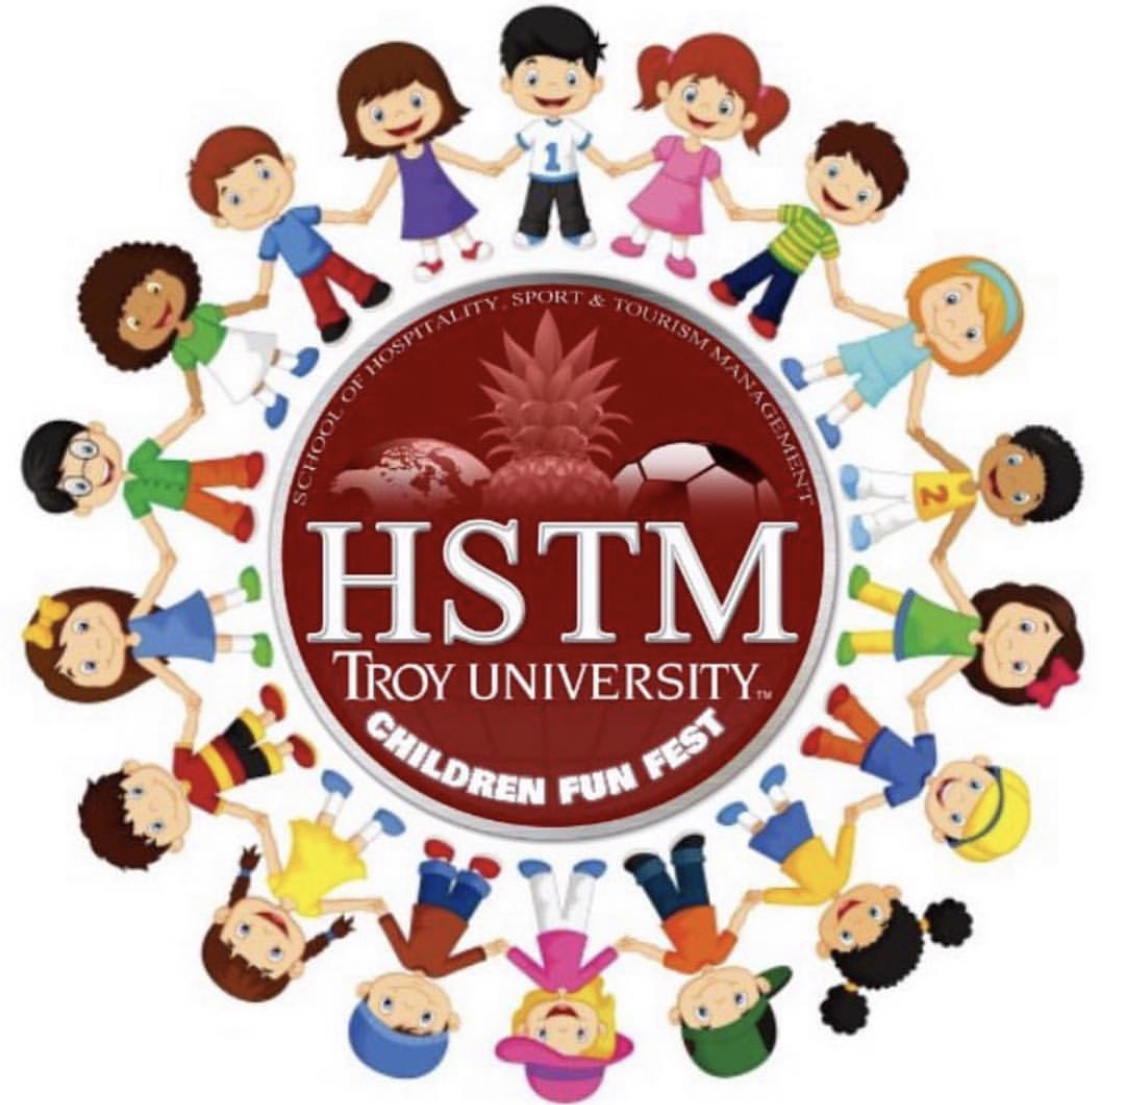 HSTM Children's Fun Fest logo